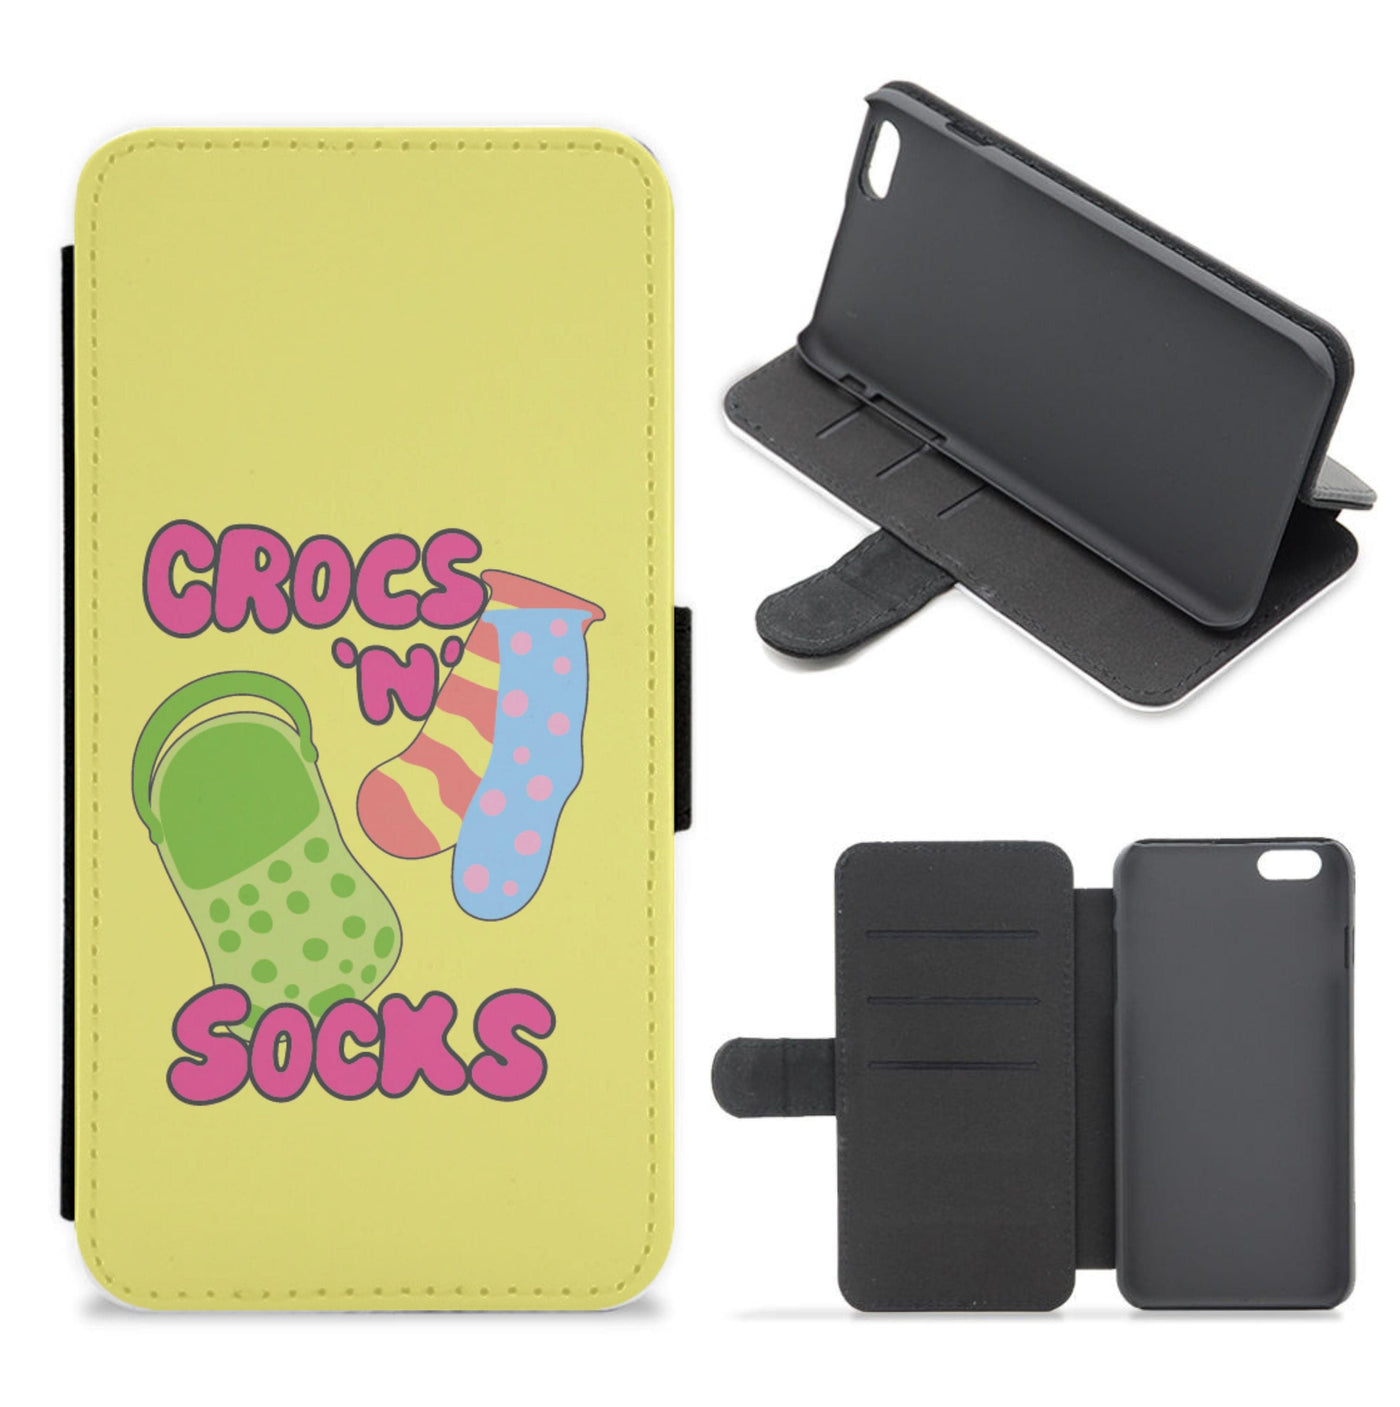 Crocs And Socks - Crocs Flip / Wallet Phone Case